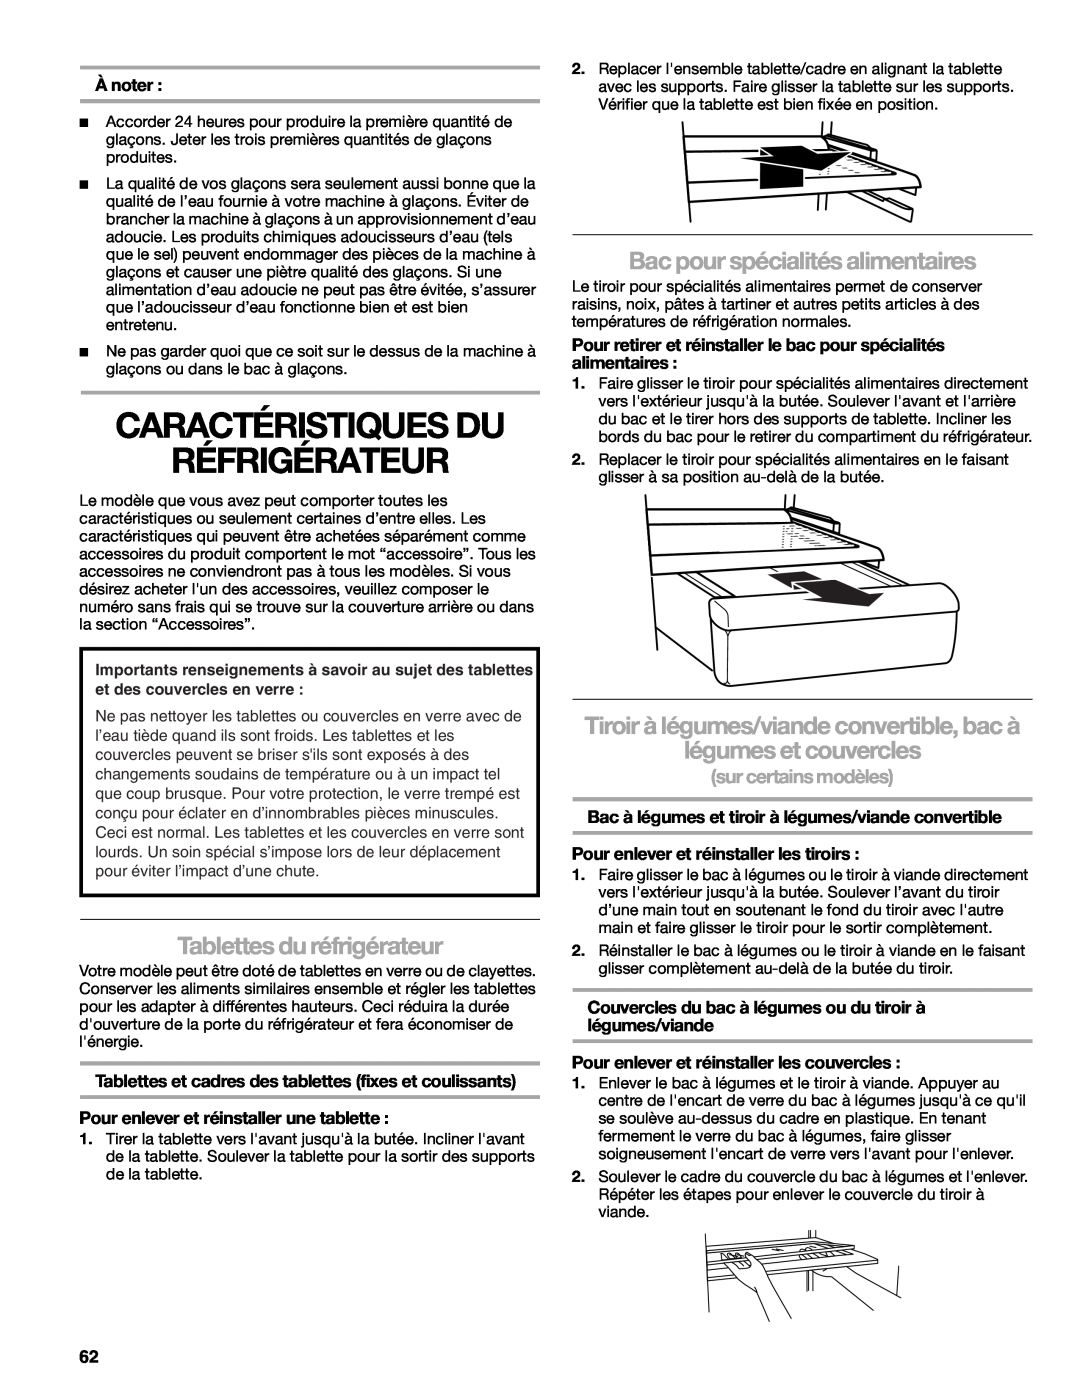 Sears T1KB2/T1RFKB2 manual Caractéristiques Du Réfrigérateur, Tablettes du réfrigérateur, Bac pour spécialités alimentaires 